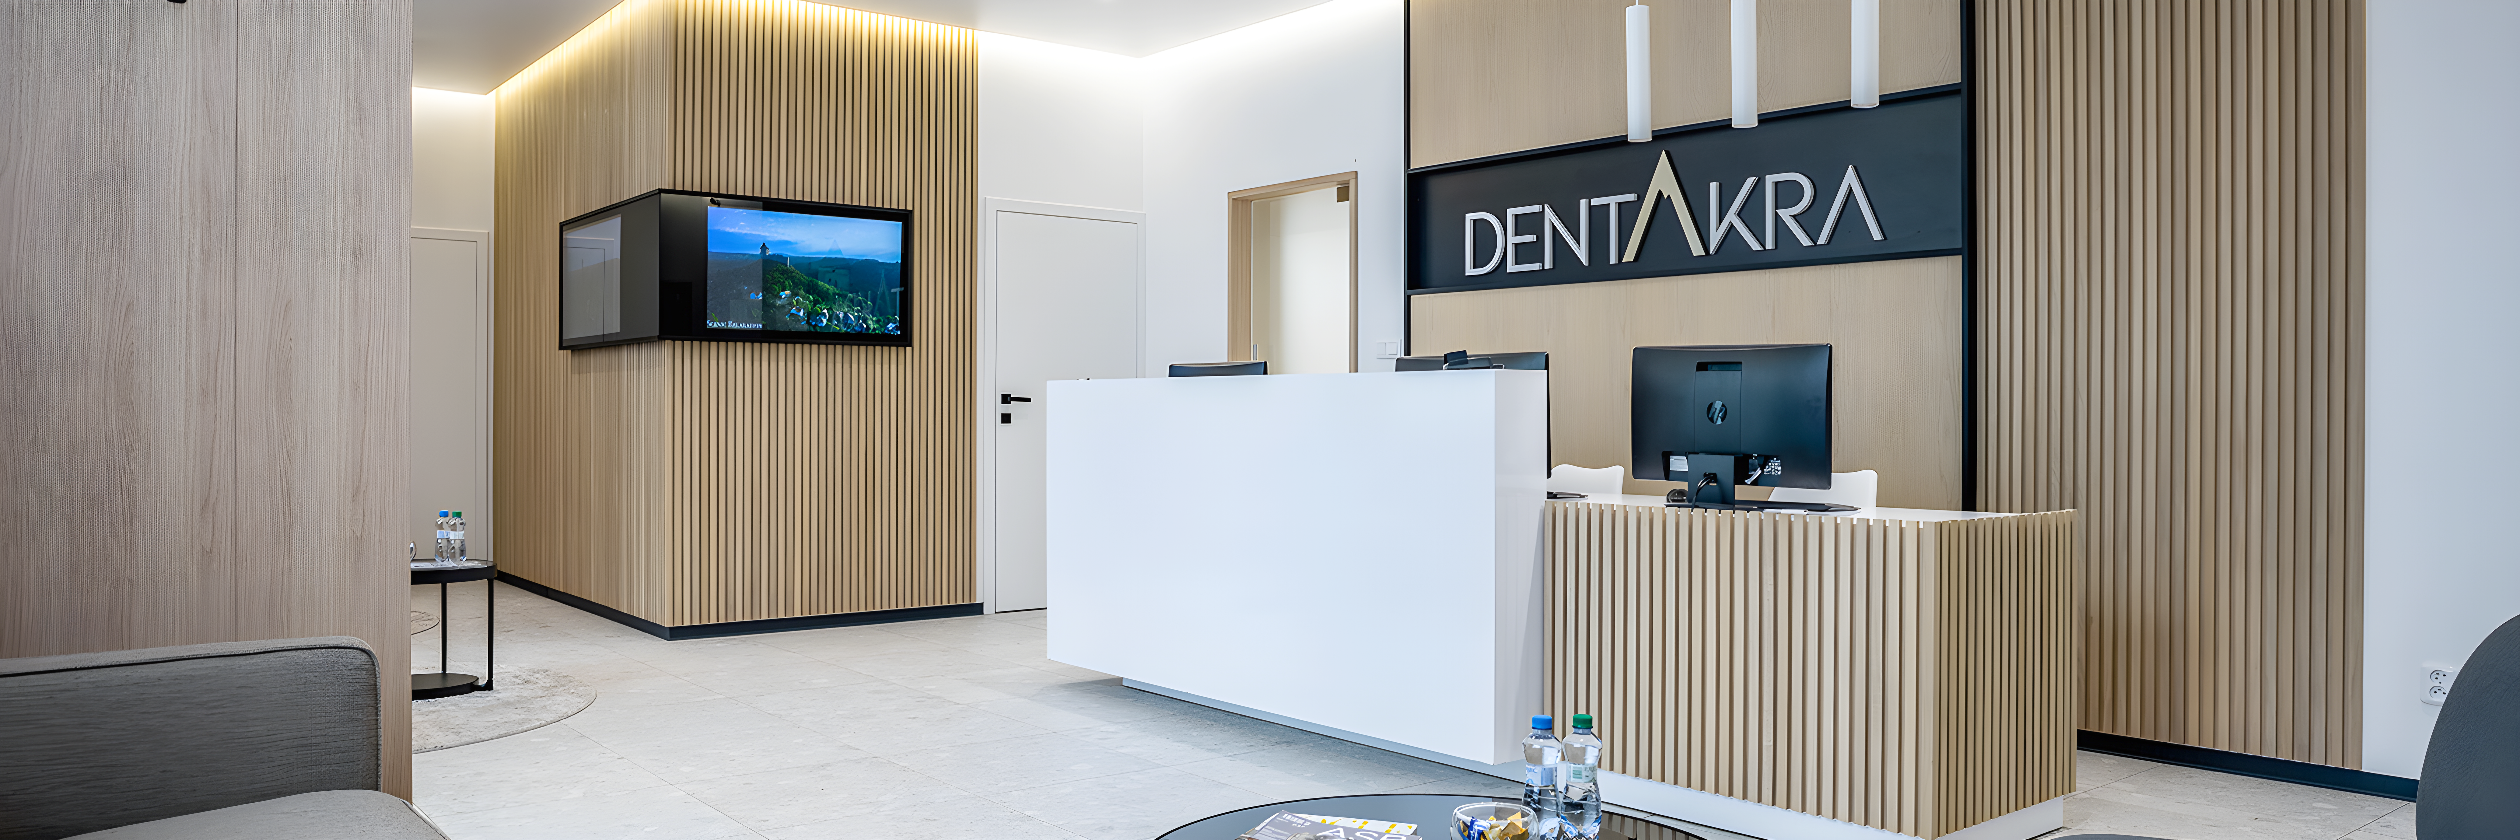 Moderná stomatologická klinika DentAkra v Poprade